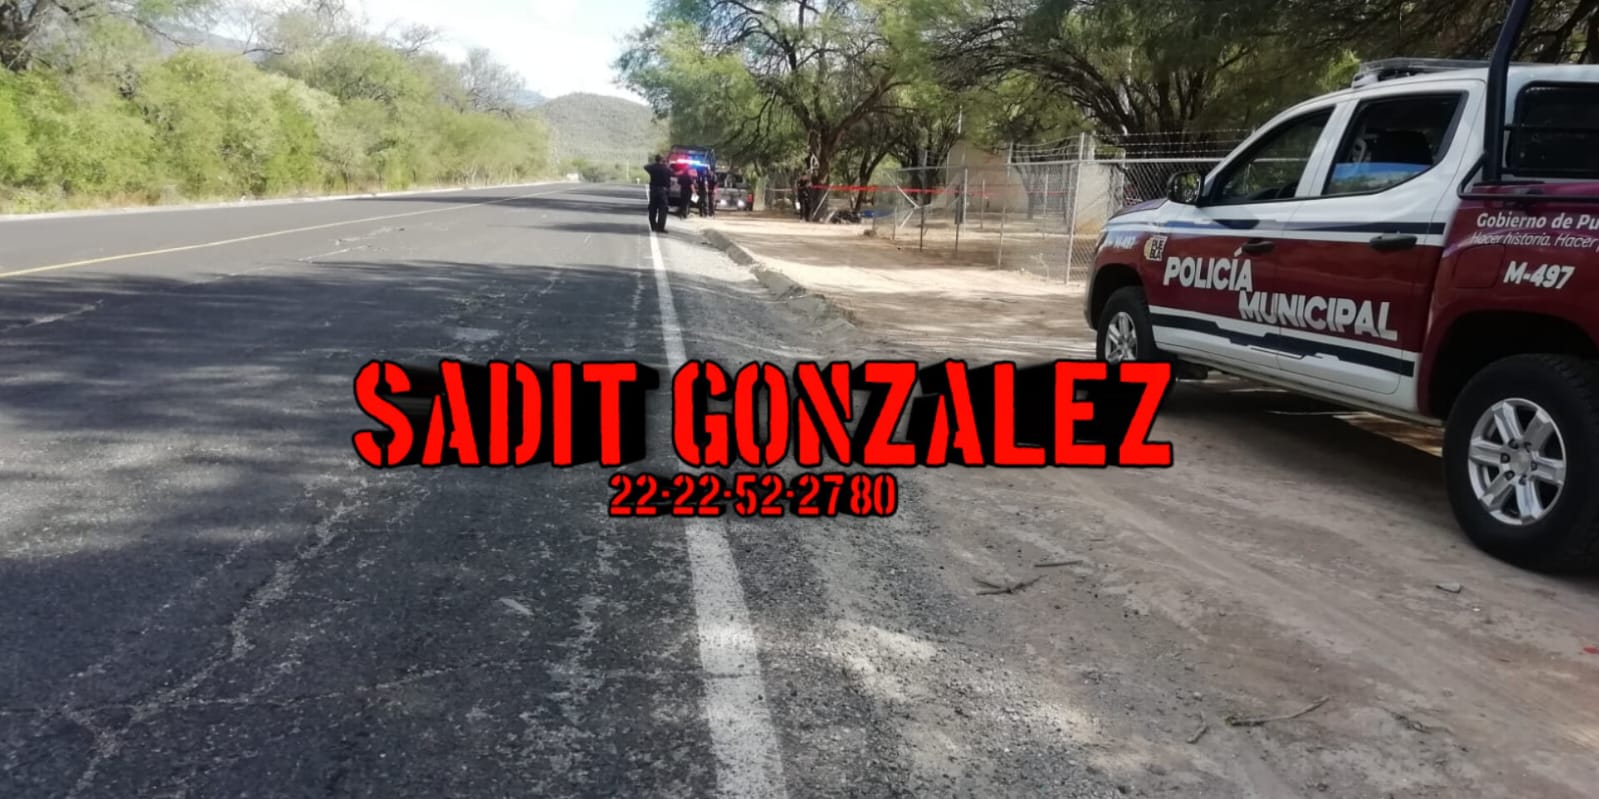 Accidente en moto deja un hombre muerto y otro lesionado en San Sebastián Zinacatepec